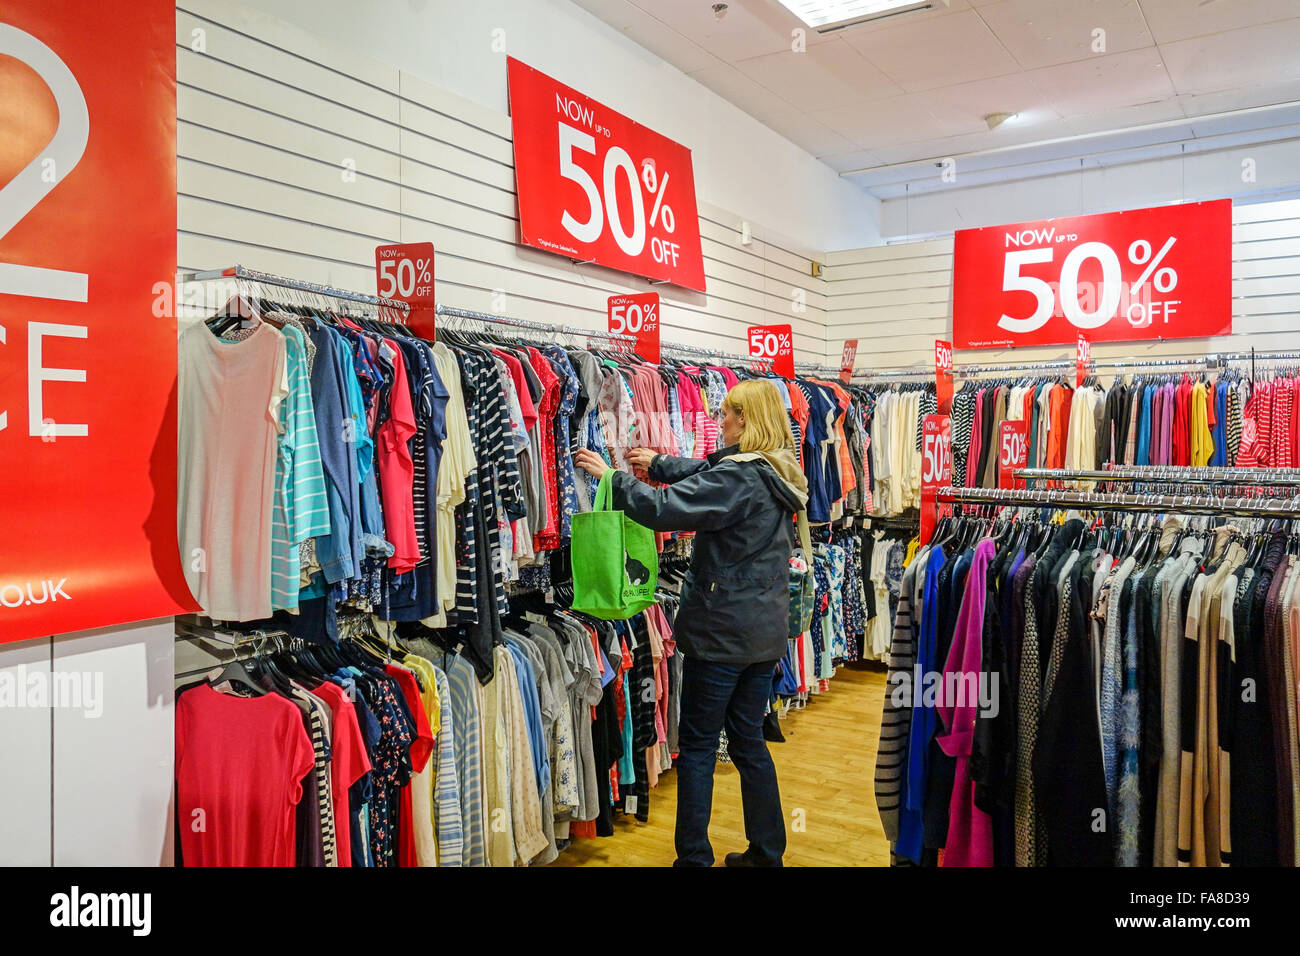 Eine Frau, die Kleidung in einem Verkauf auf Schienen in einem Geschäft mit  50 % Rabatt auf die Preise hängen betrachten Stockfotografie - Alamy